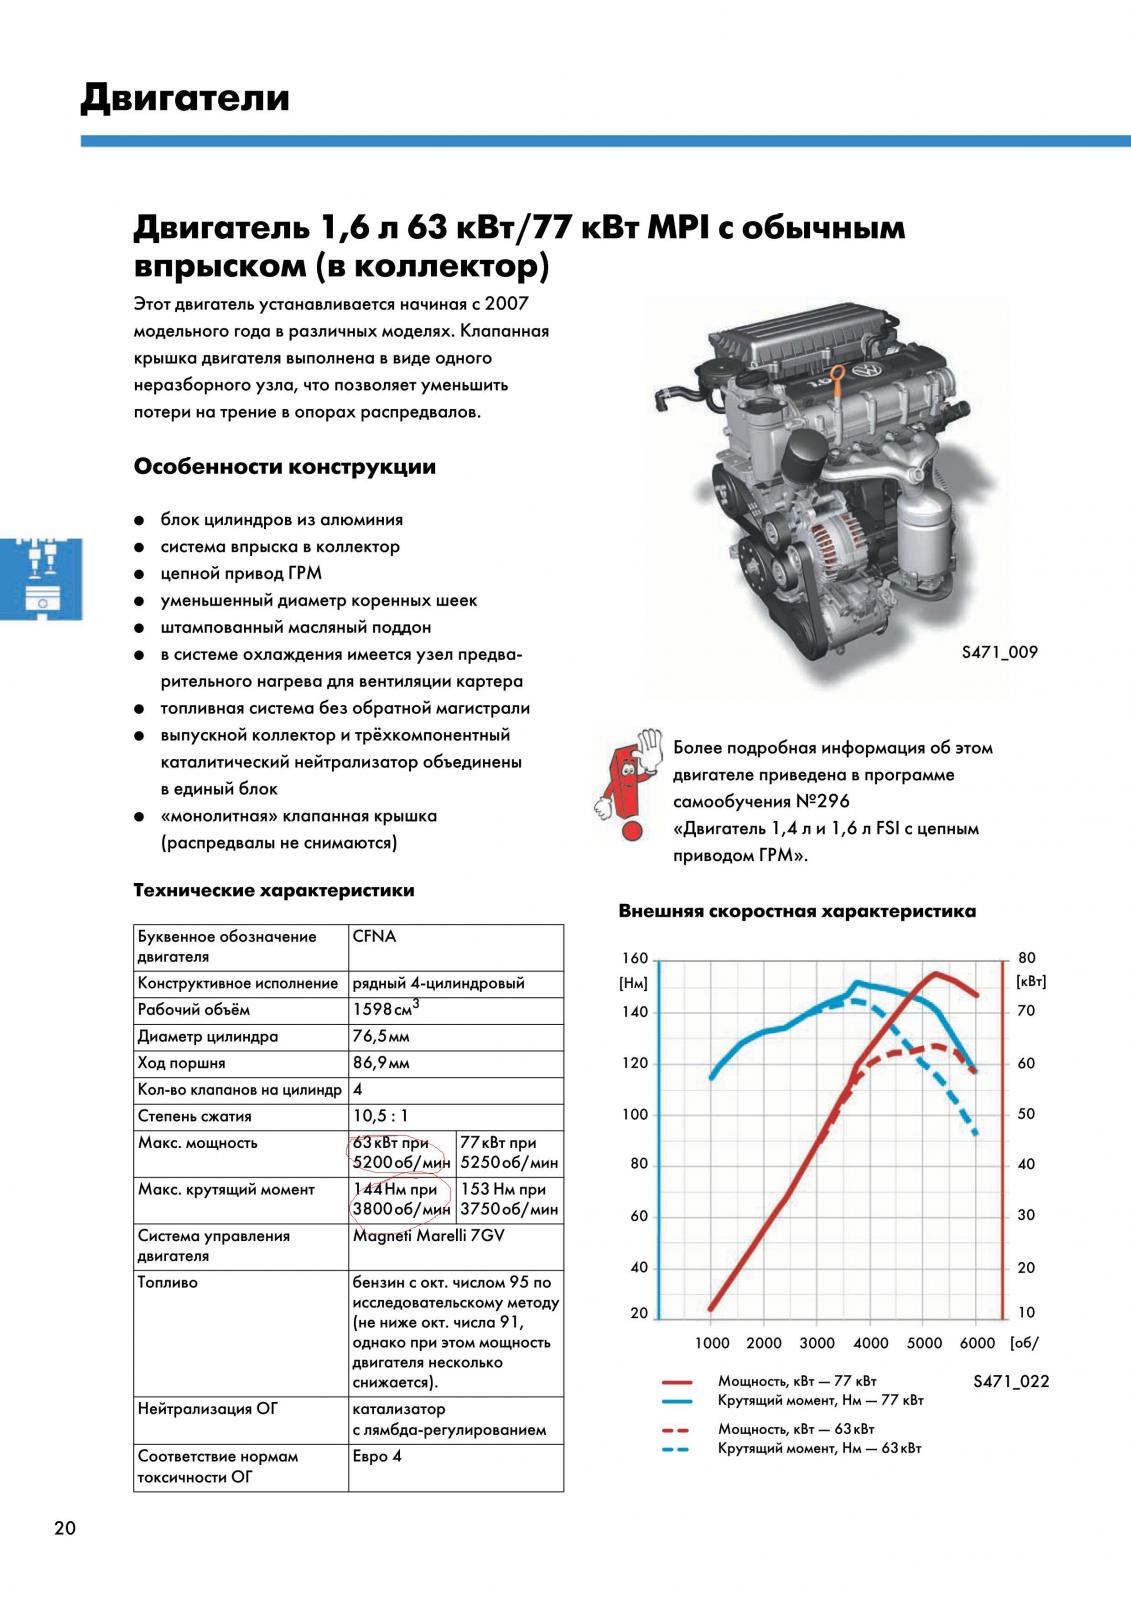 Двигатель cwva - характеристики, проблемы, модификации и надежность